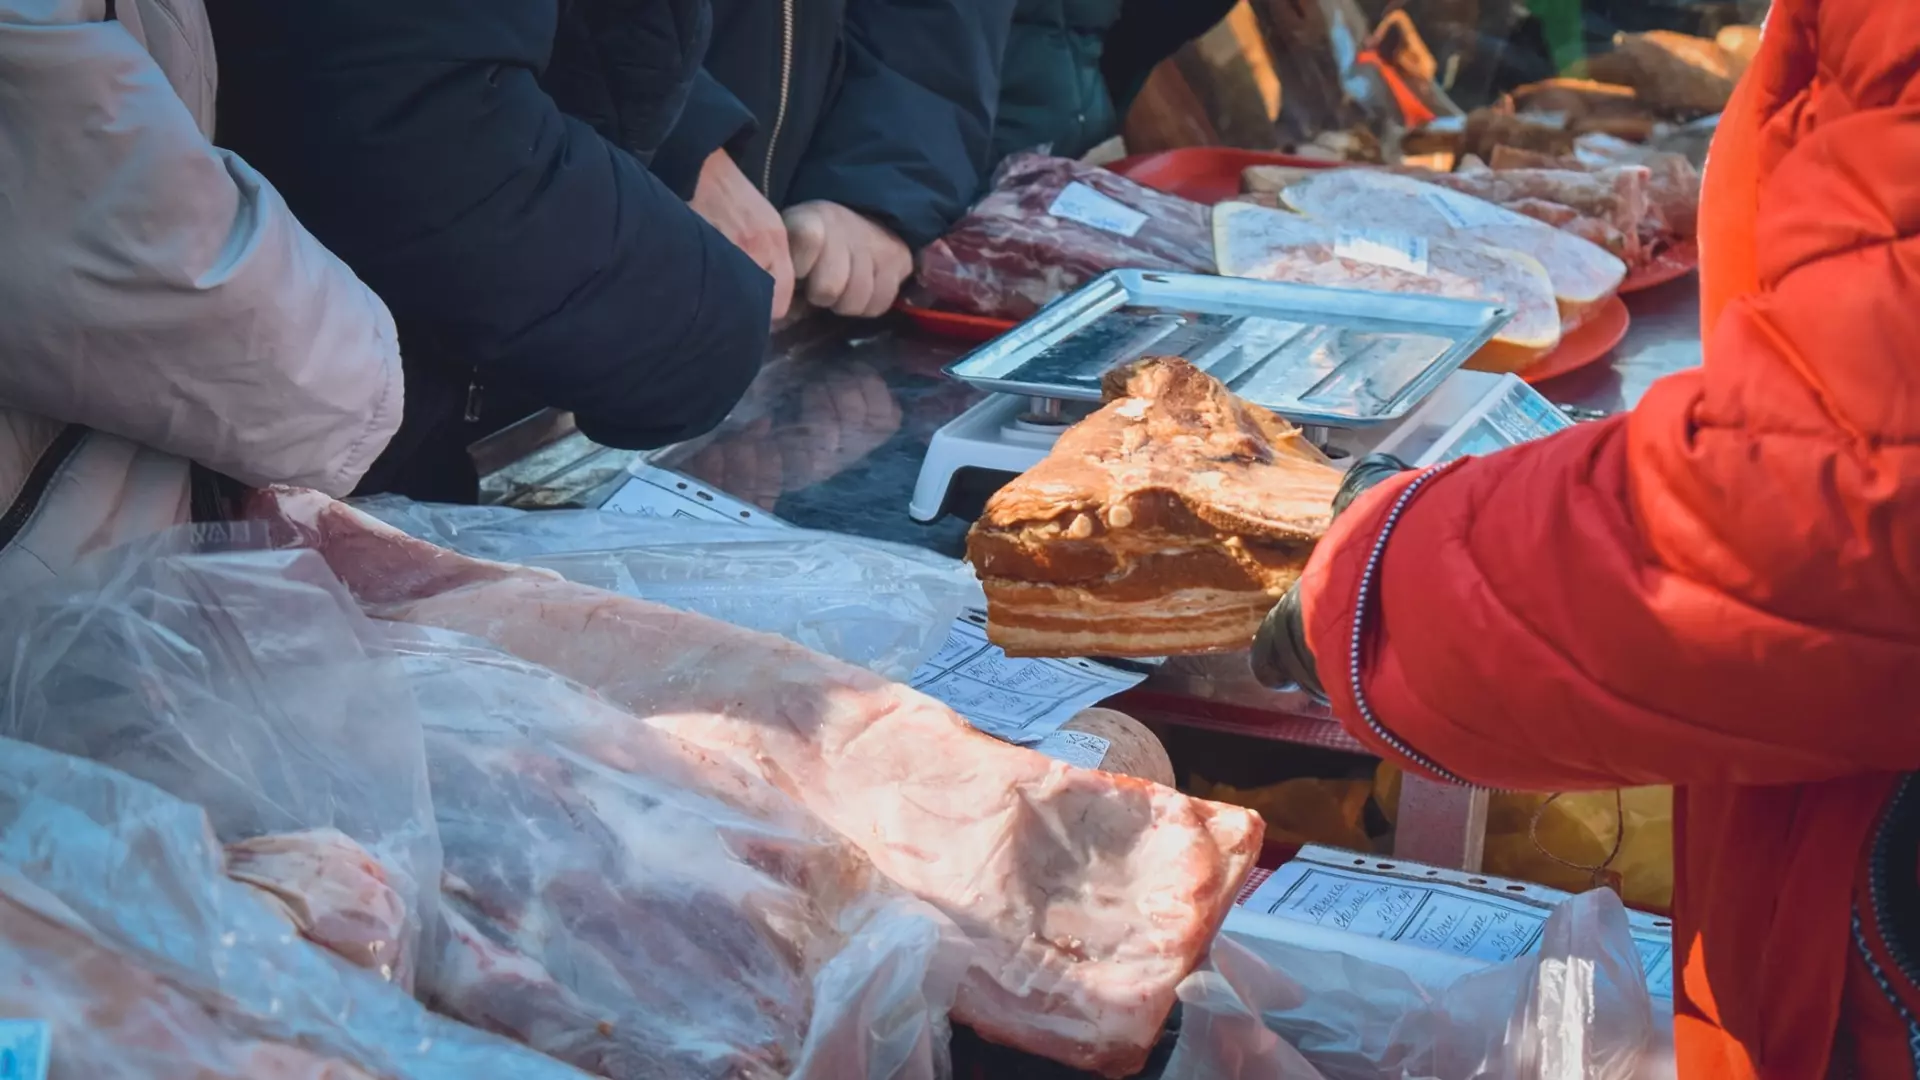 Жители Тюмени скупают на продовольственной ярмарке рыбу, мясо и яйца